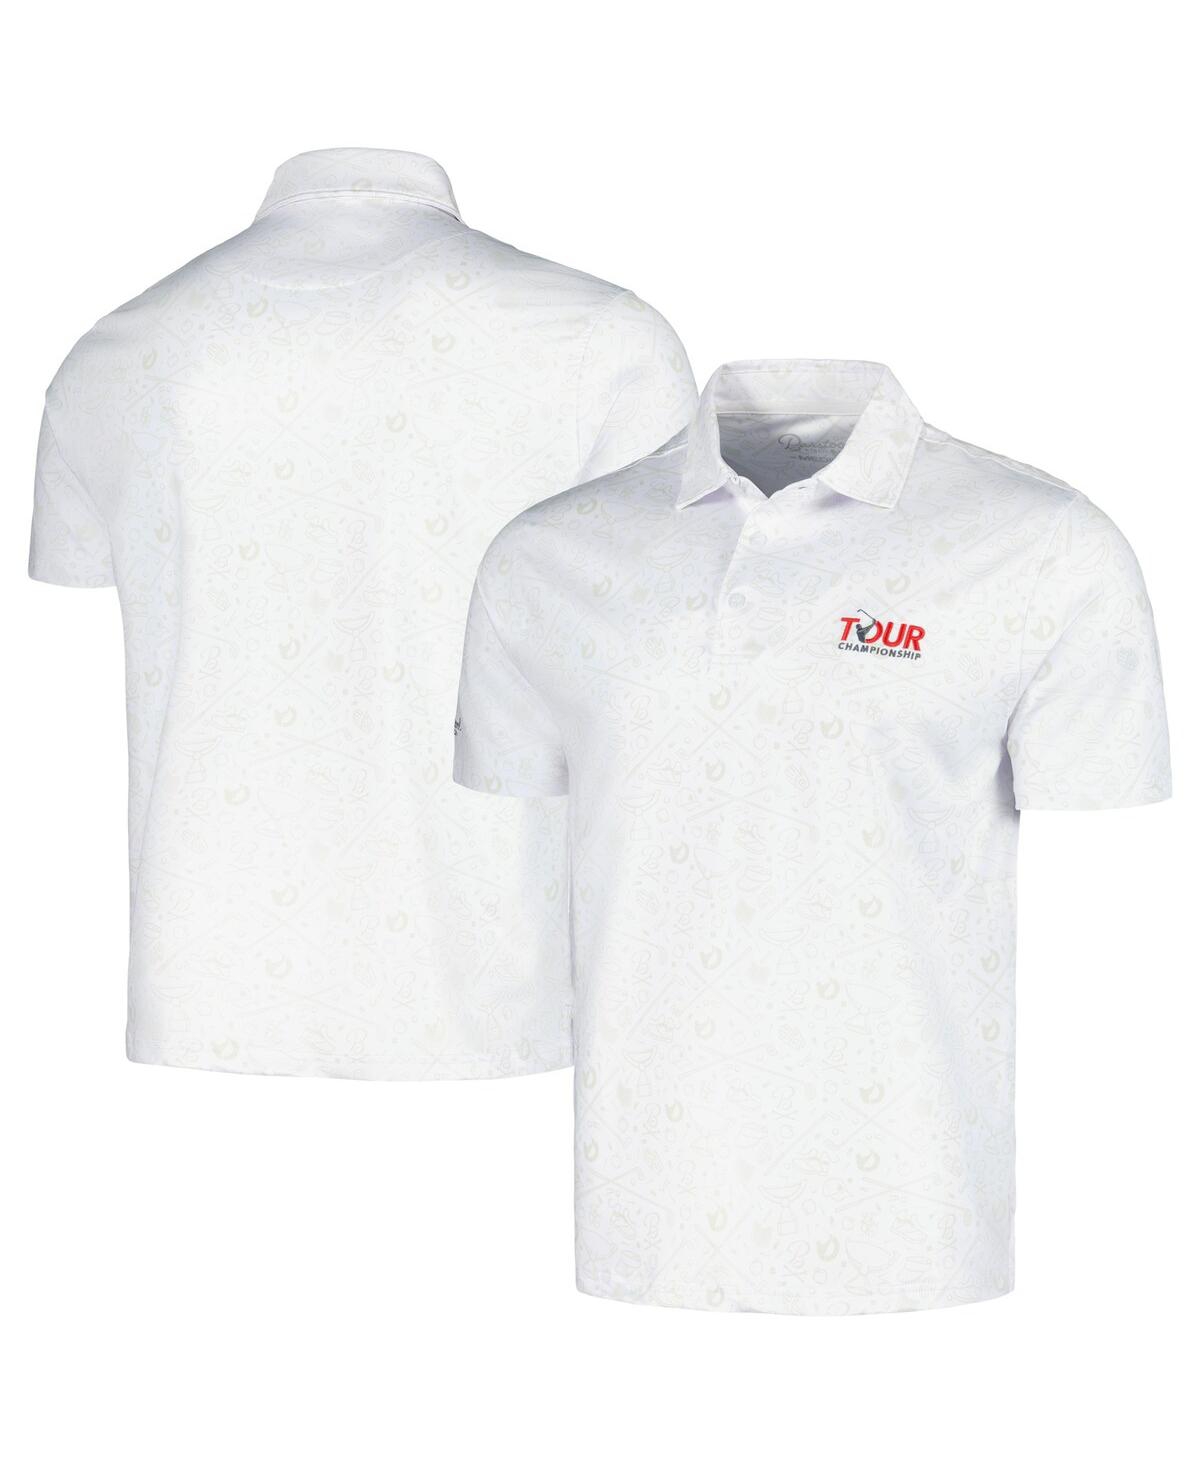 Men's Barstool Golf White Tour Championship Polo Shirt - White